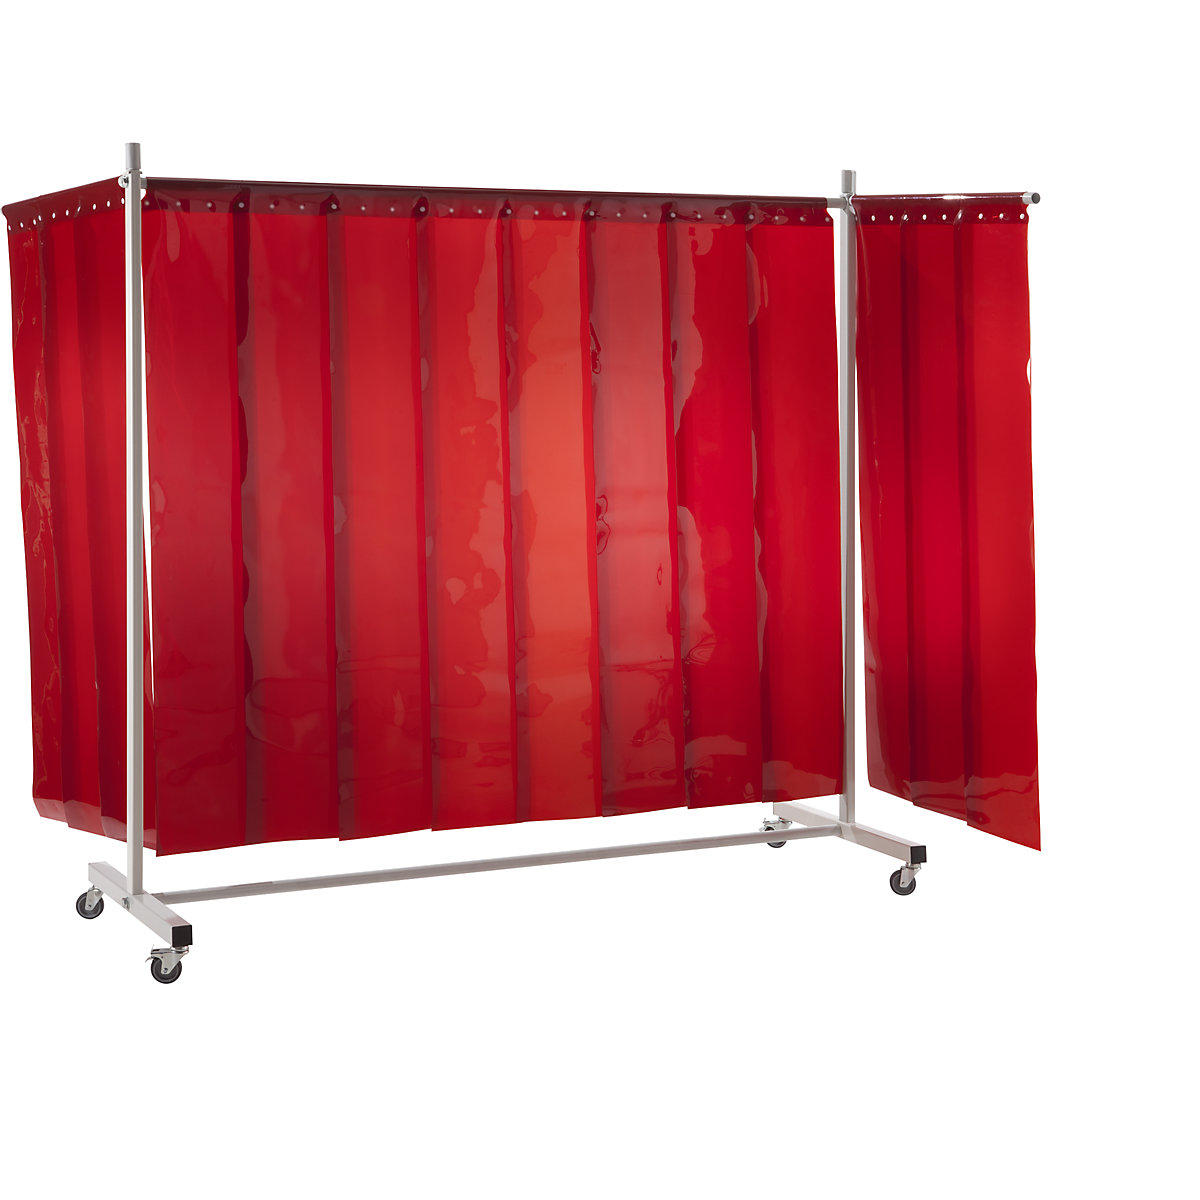 Ecran mobile de protection pour soudeur, avec rideau à lanières, rouge, l x h 3700 x 2100 mm, 3 élément-5